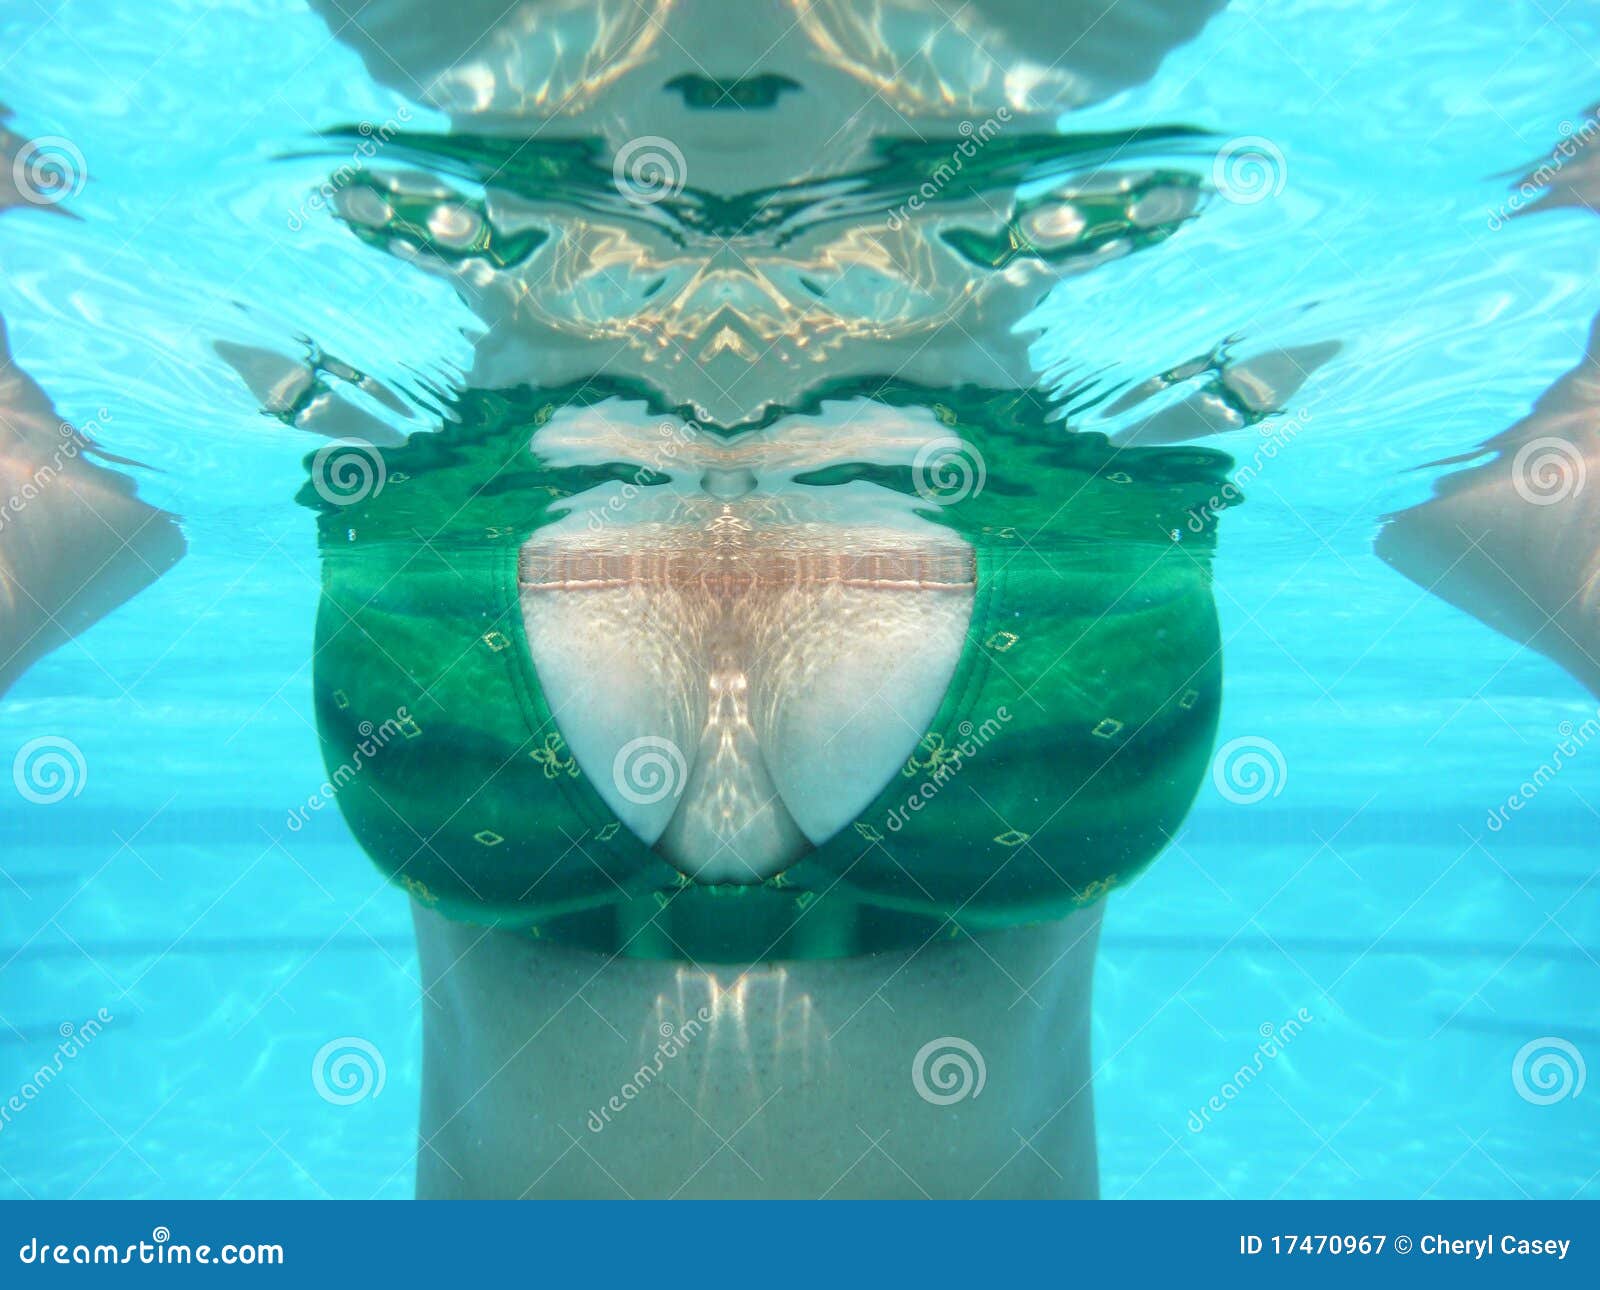 Underwater titties